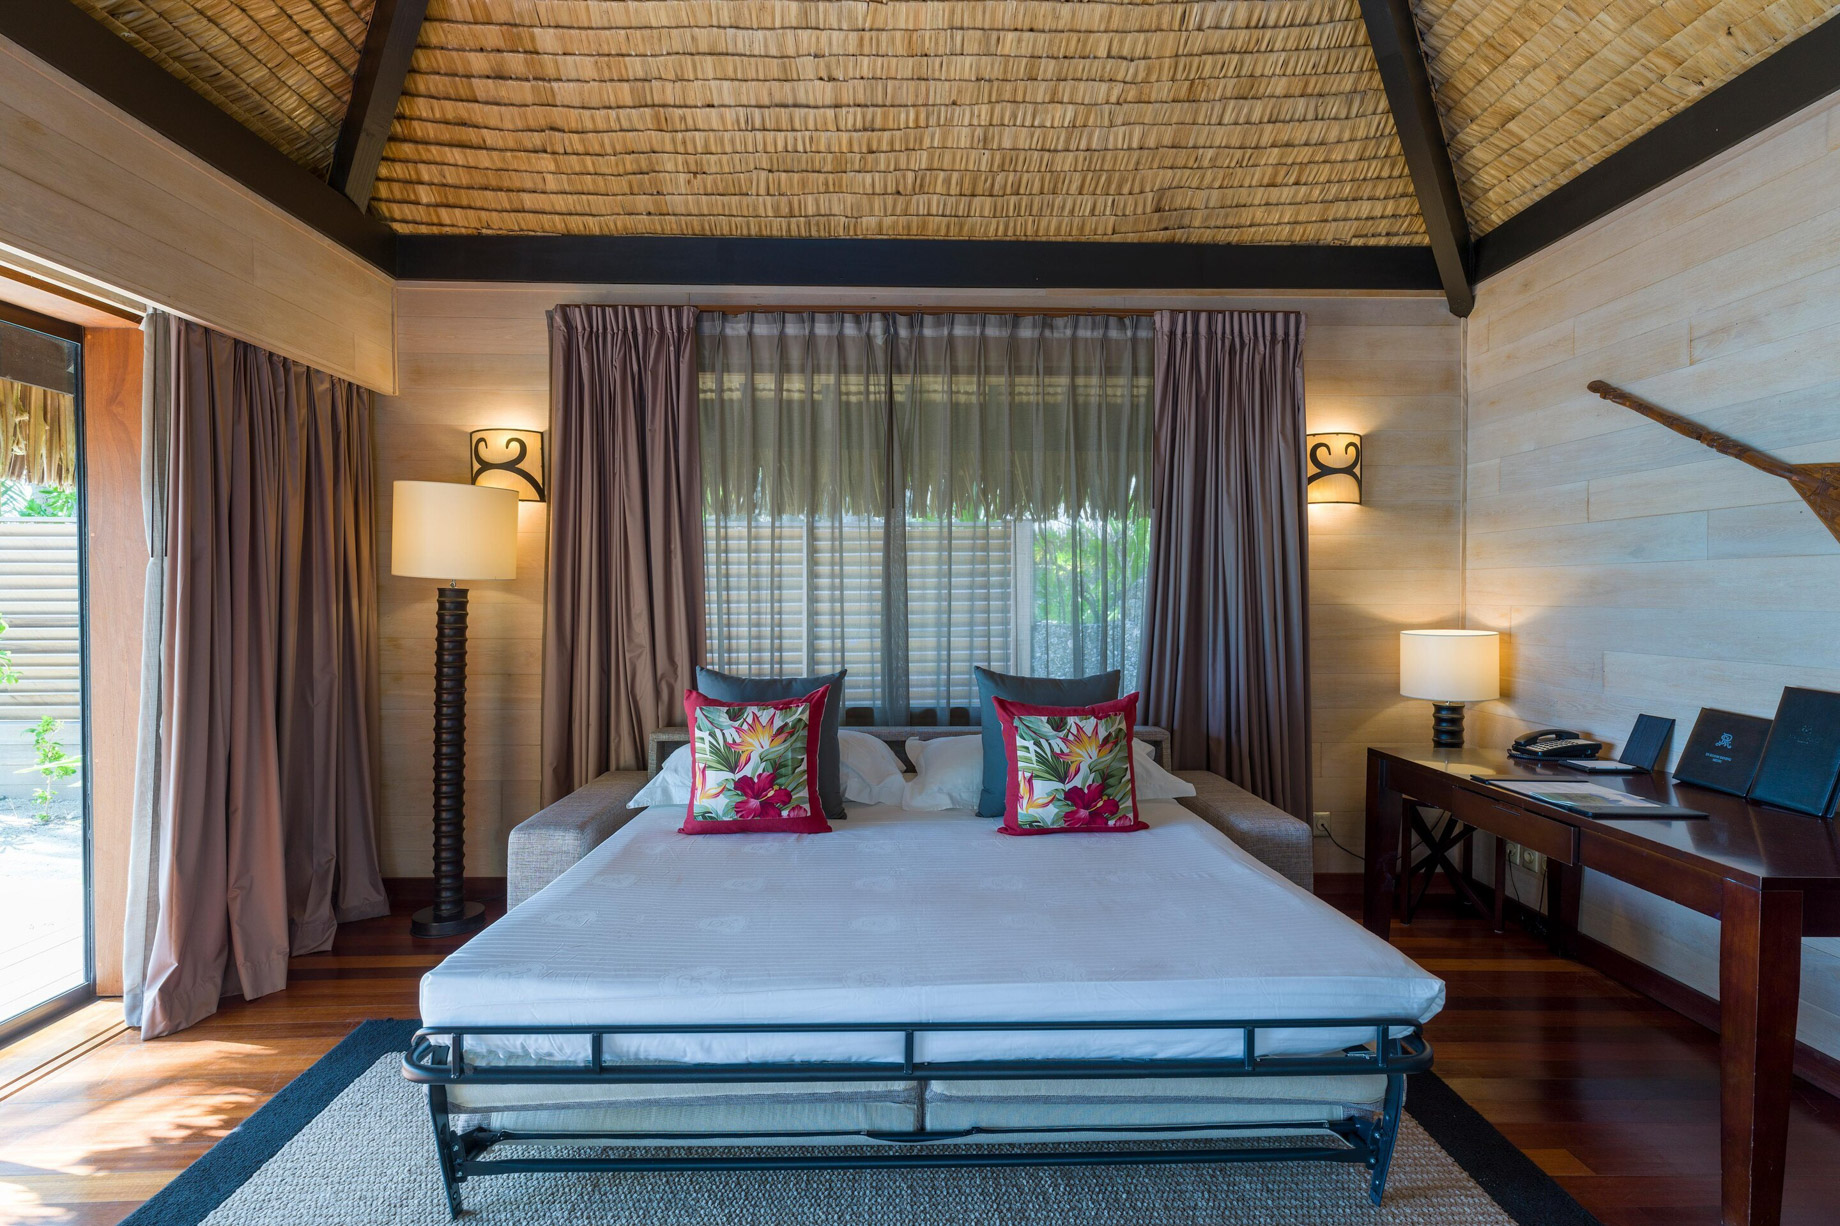 The St. Regis Bora Bora Resort - Bora Bora, French Polynesia - Beach Front Suite Villa Sofa Bed